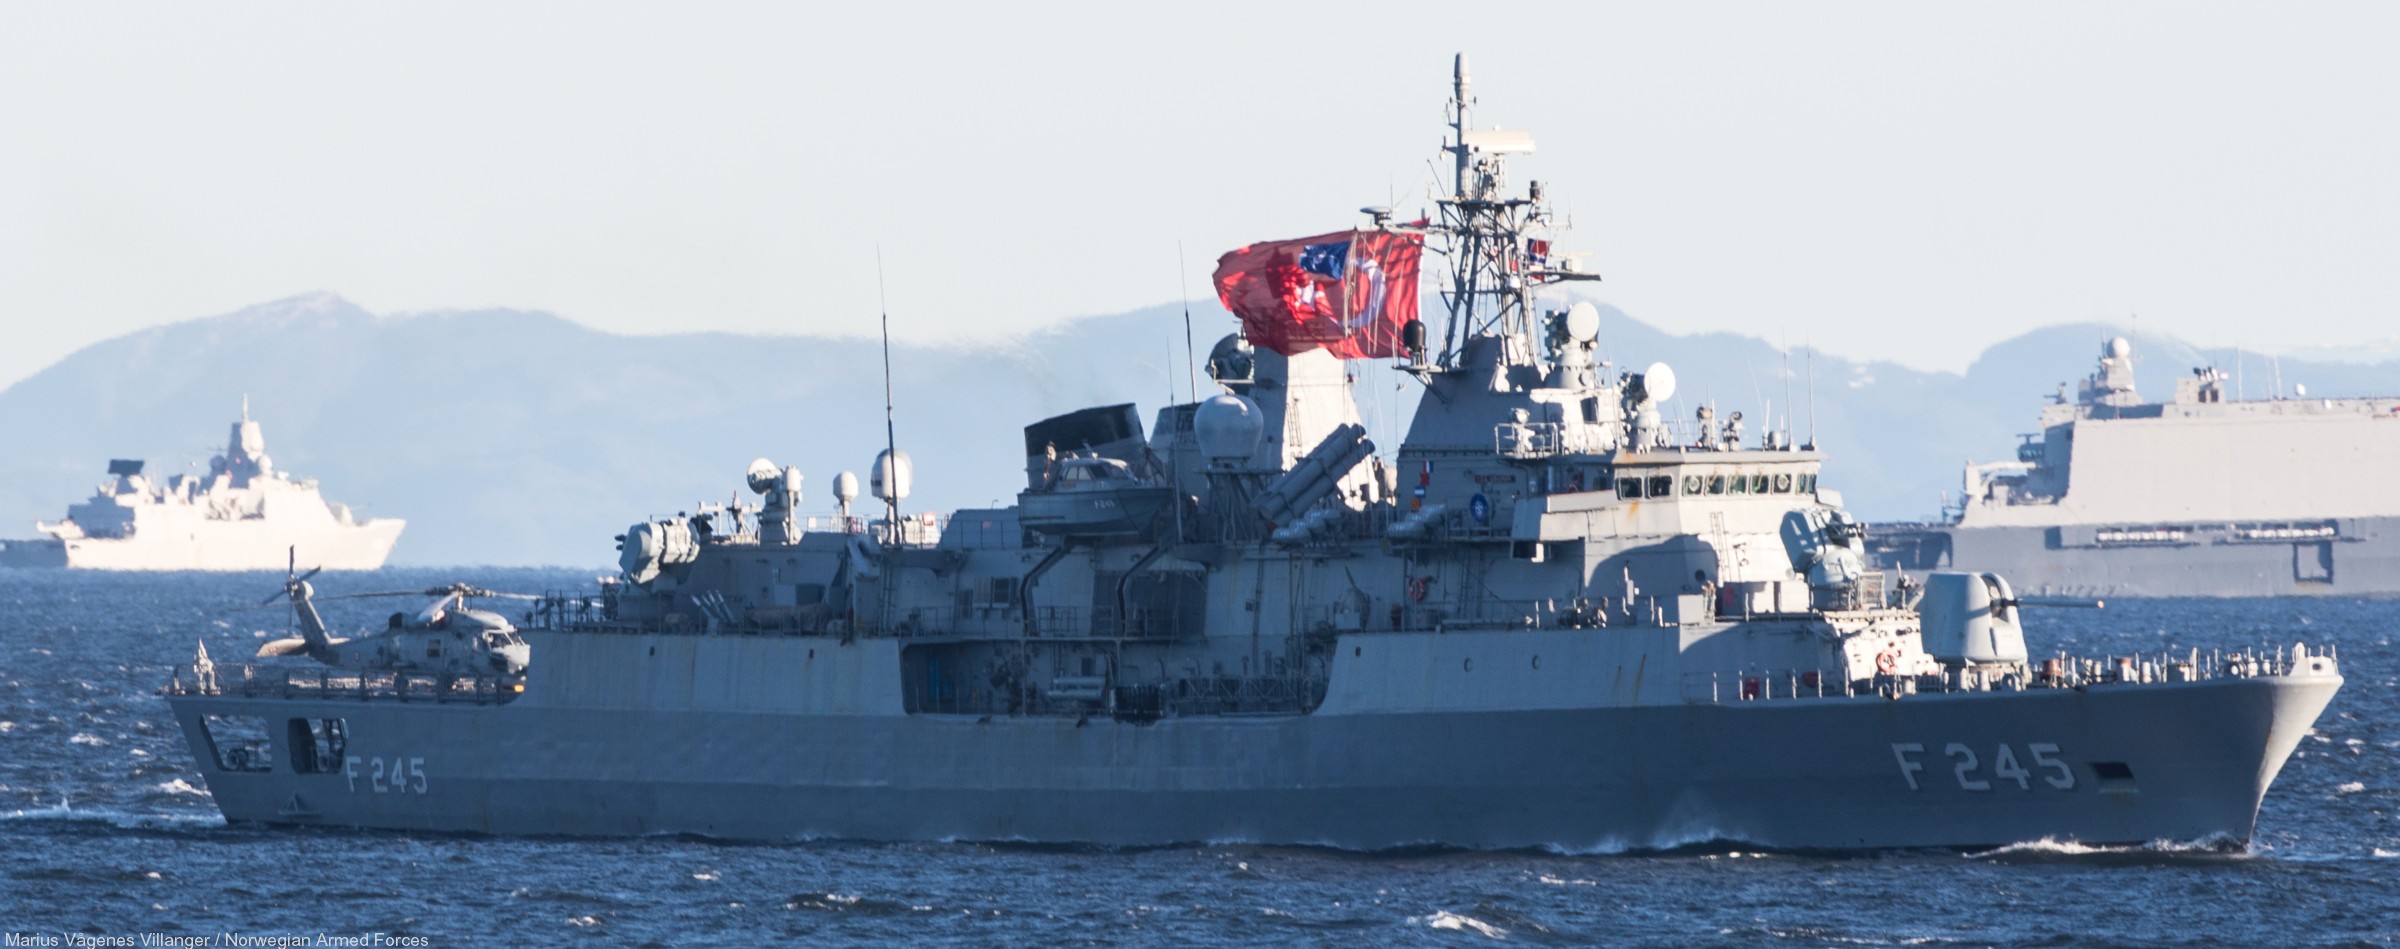 f-245 tcg orucreis barbaros class frigate meko-200tn turkish navy türk deniz kuvvetleri 06